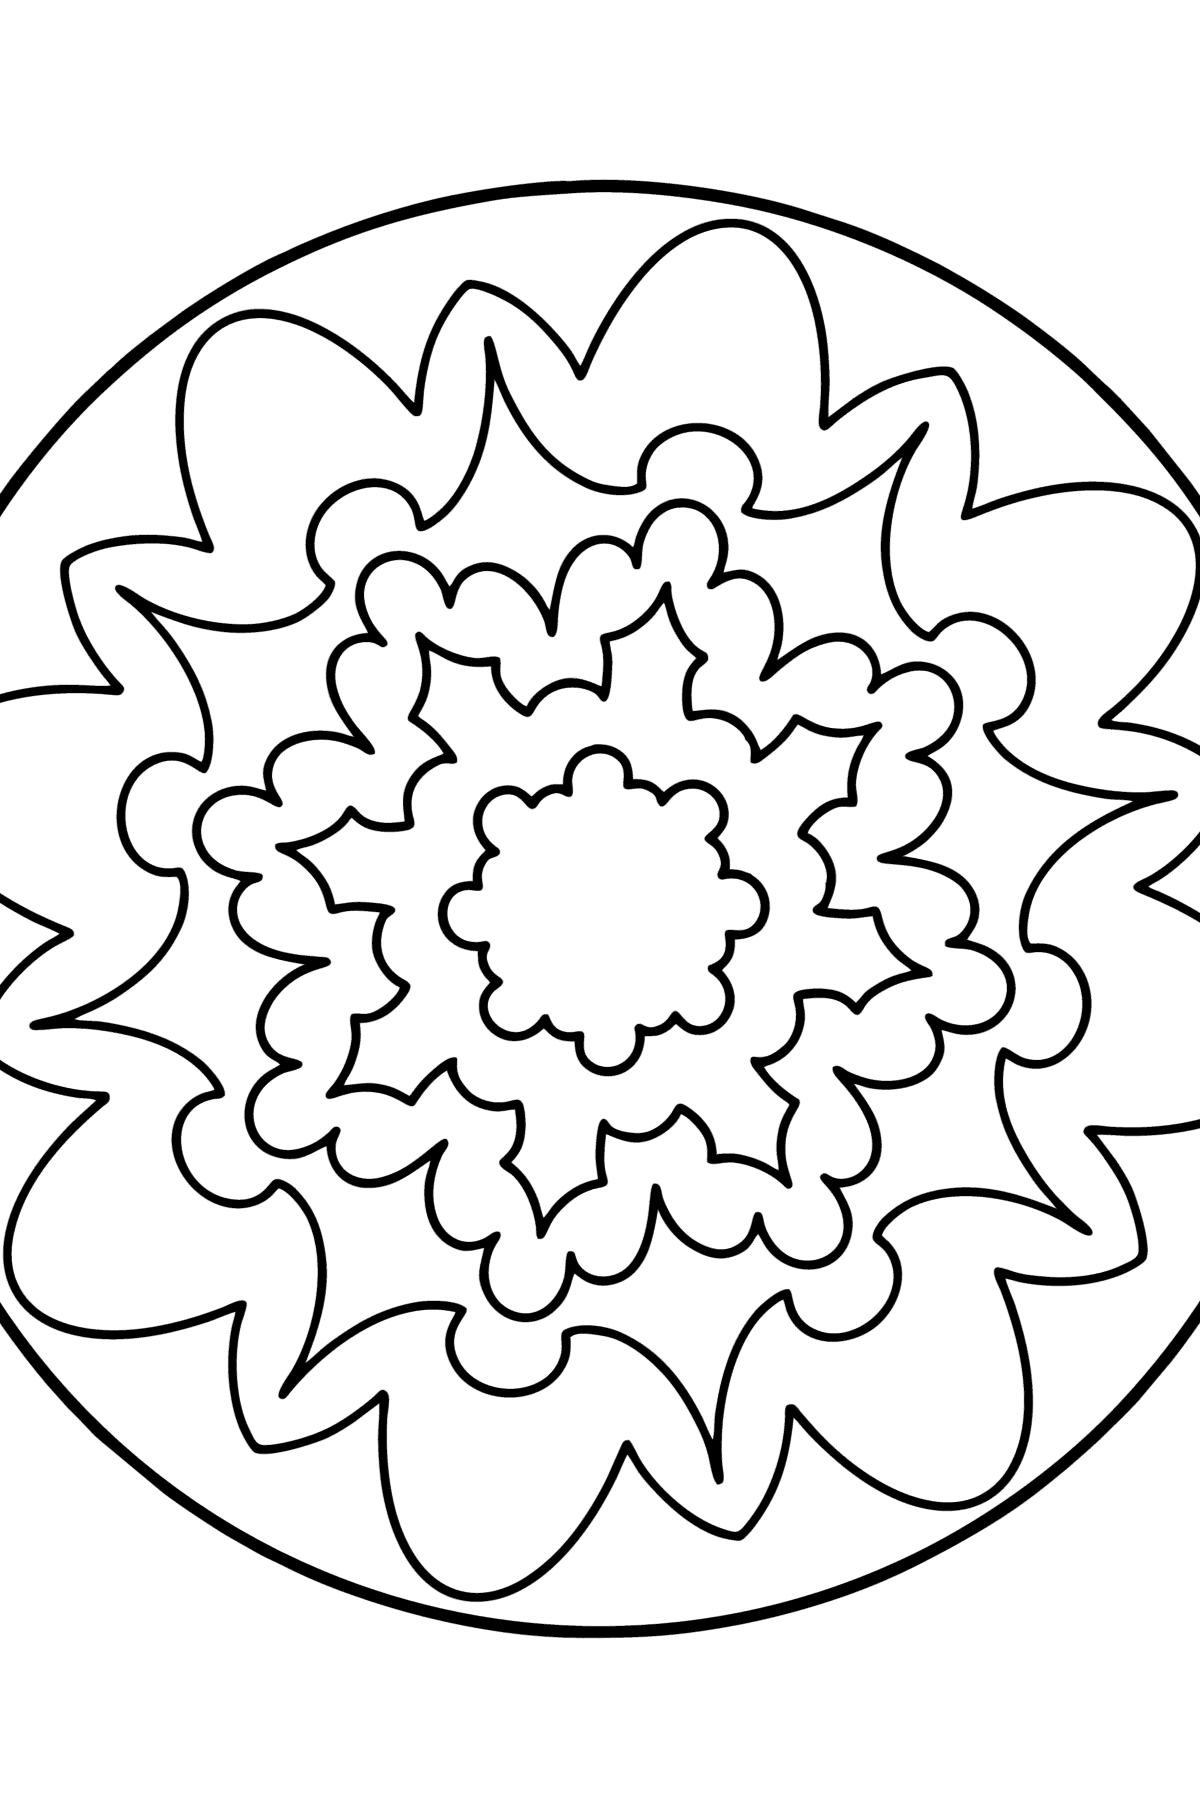 Desenho para colorir Mandala - 6 elementos - Imagens para Colorir para Crianças